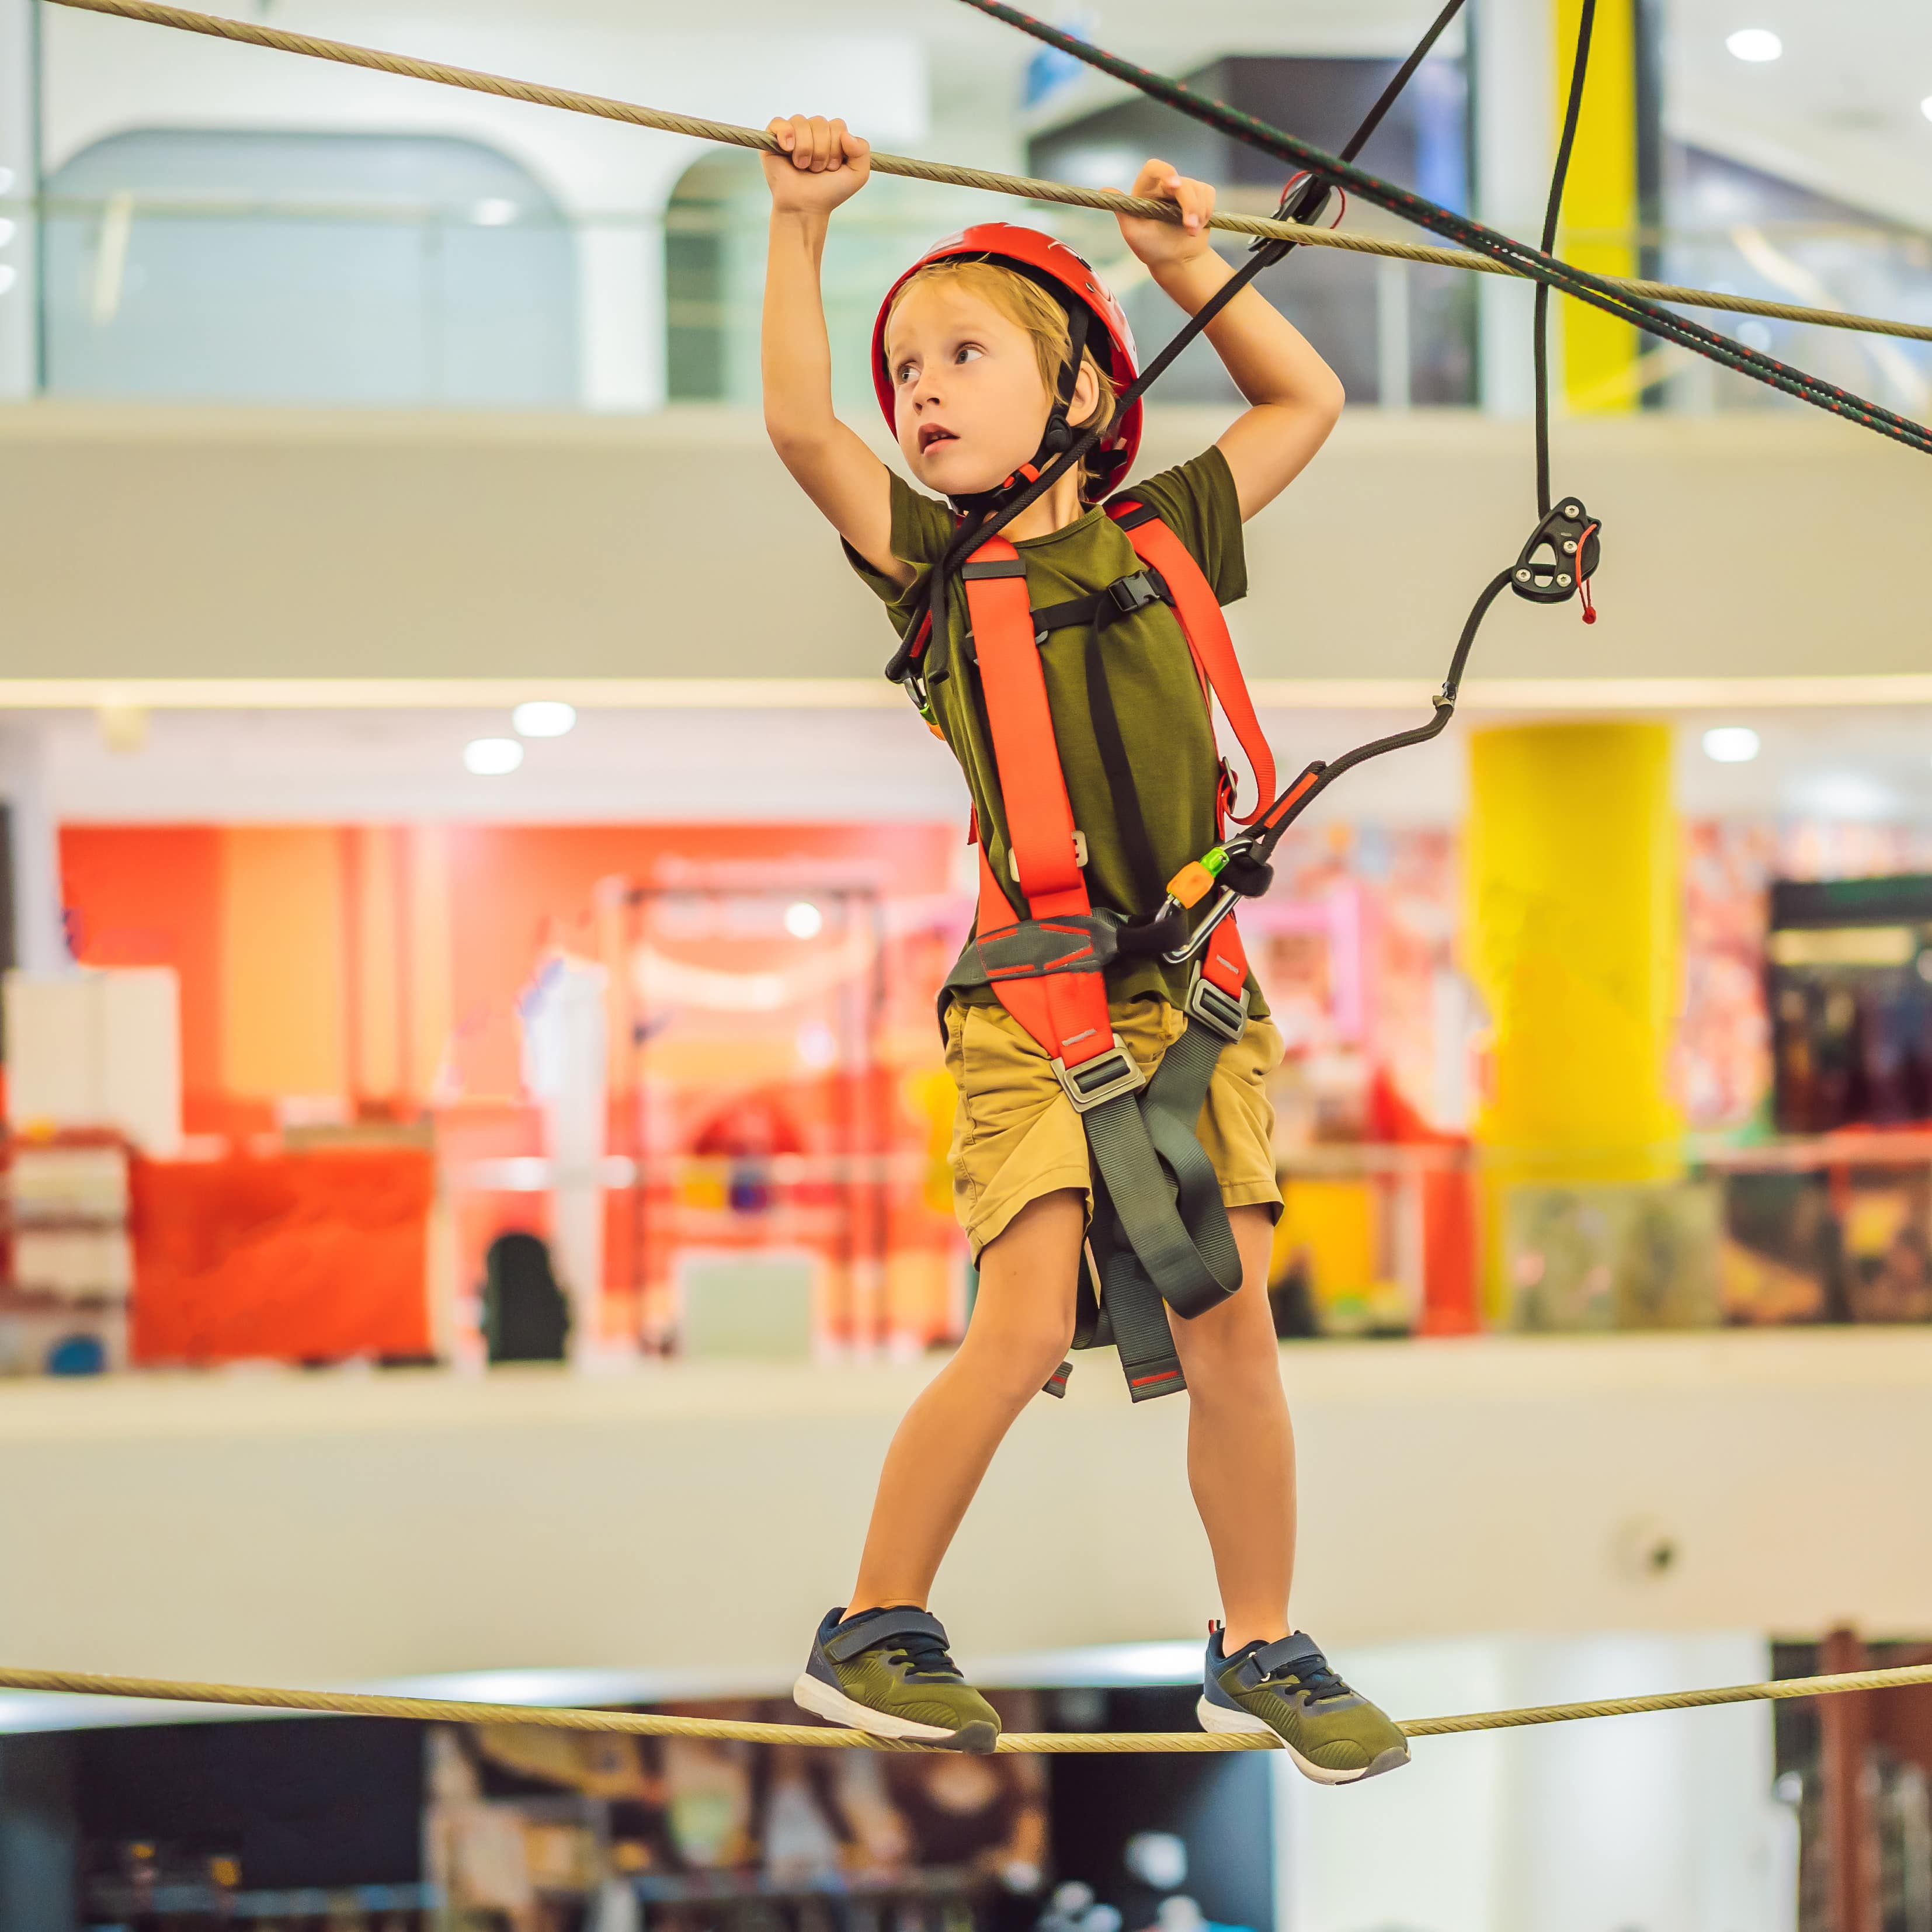 Ein Junge balanciert auf einer Kletter-Attraktion in einem Einkaufszentrum.